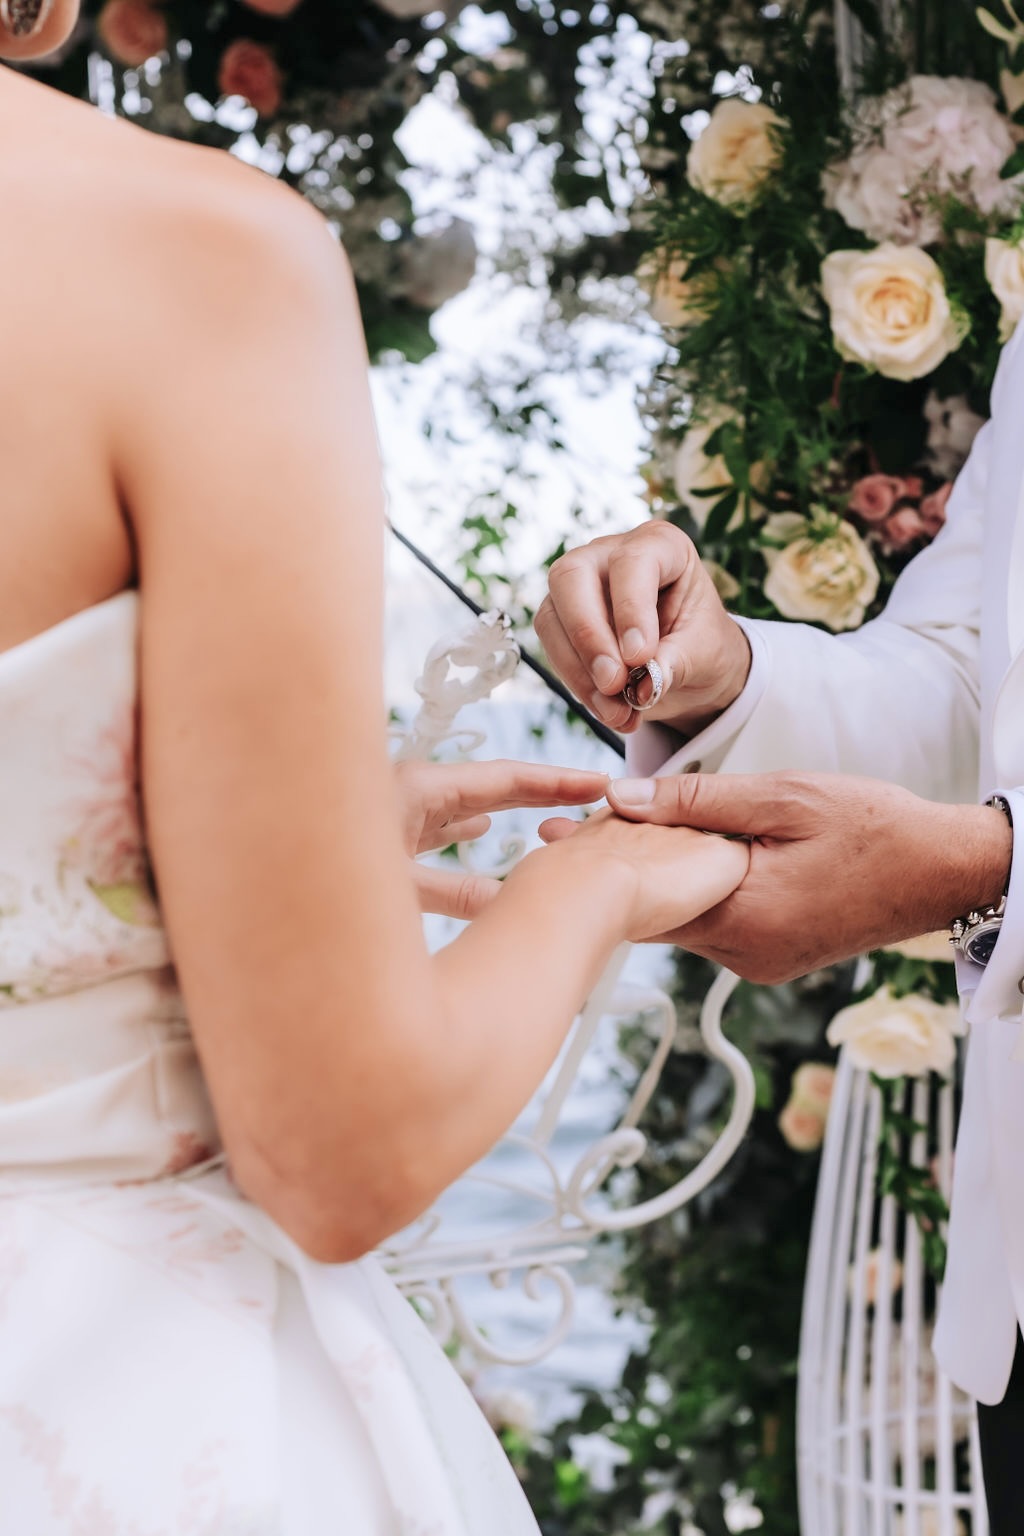 Ring exchange at Lake Garda wedding